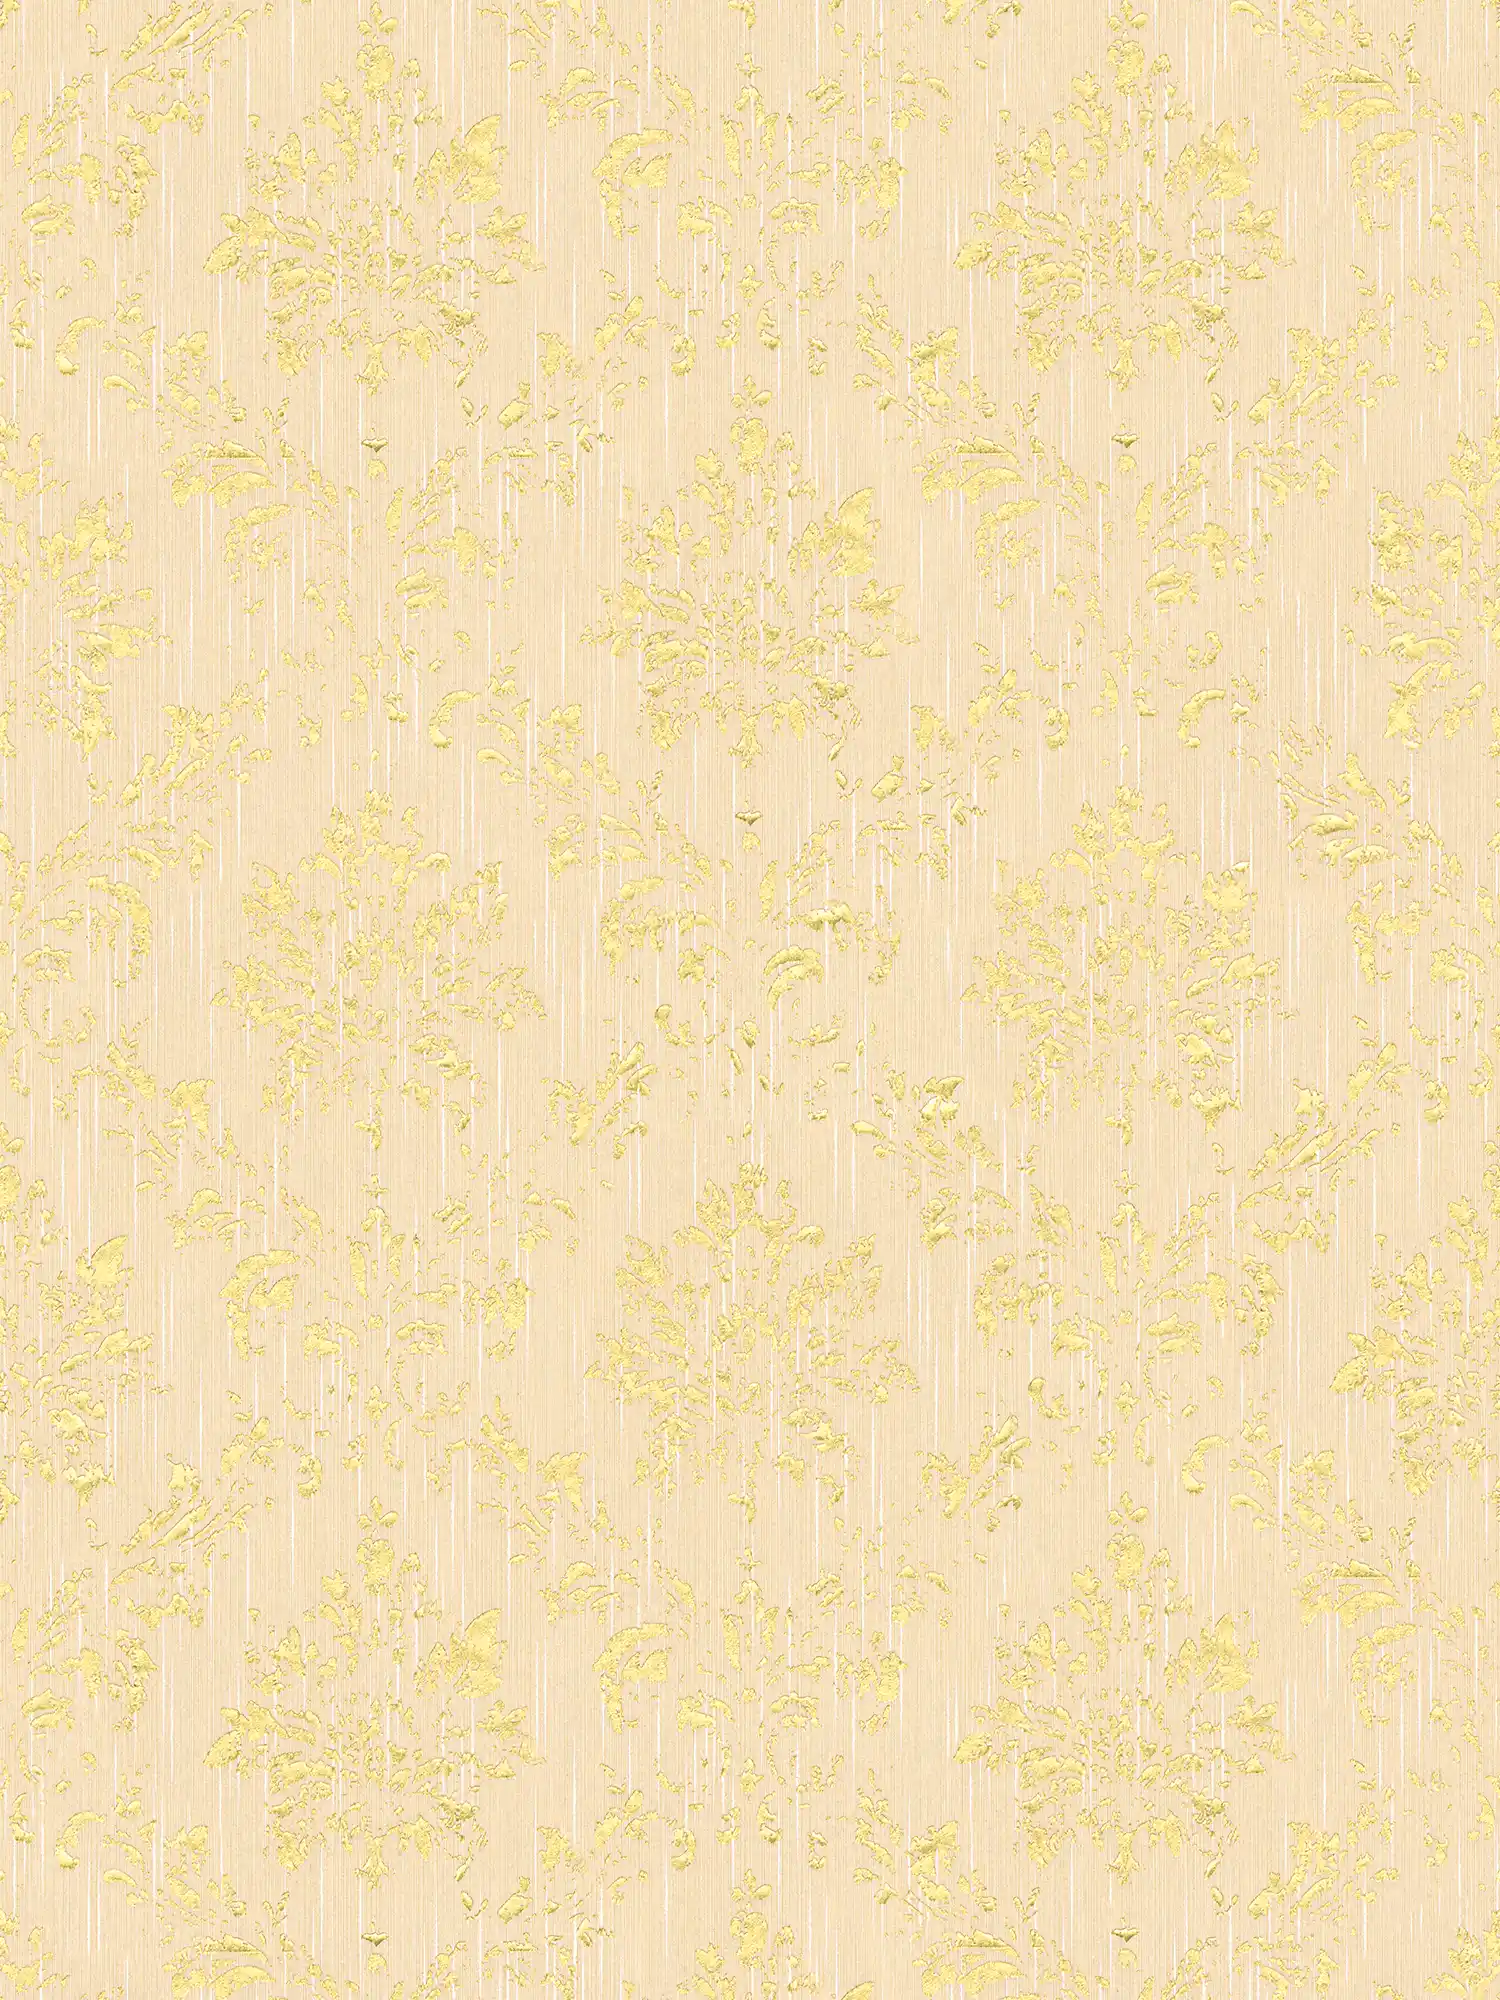 Papier peint avec ornements dorés, aspect usé - crème, or
